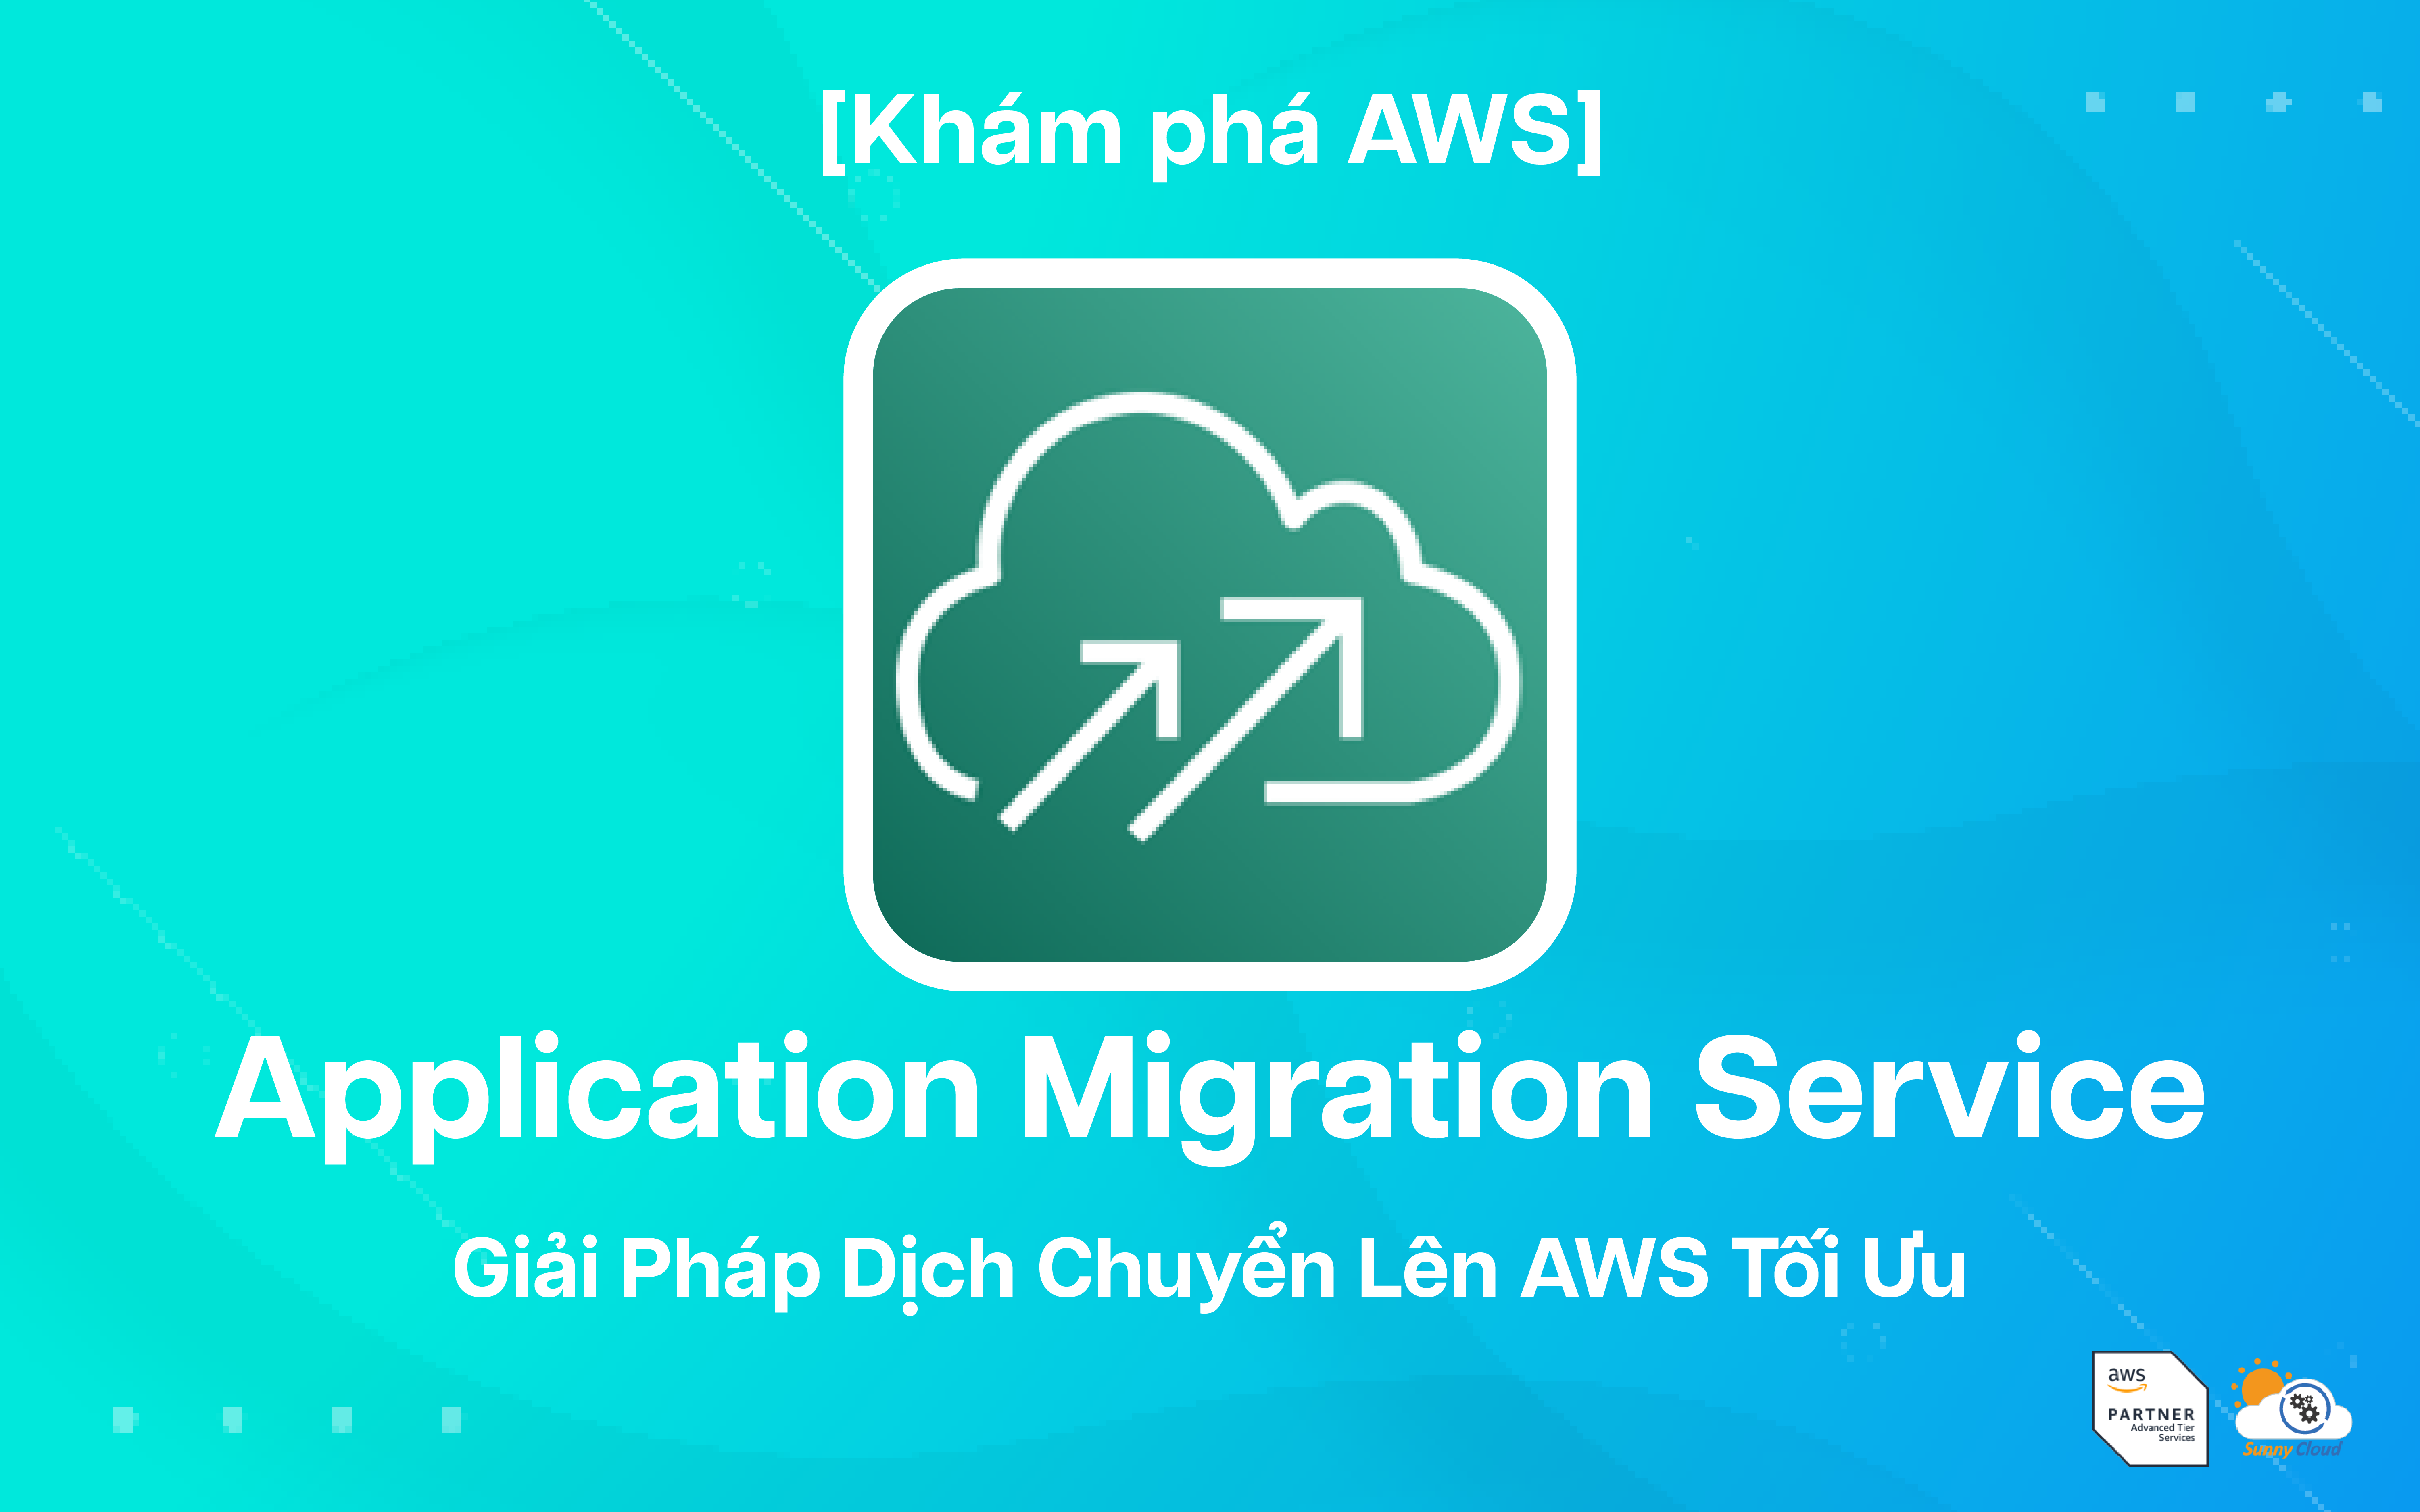 AWS Application Migration Service – Giải pháp dịch chuyển lên AWS tối ưu